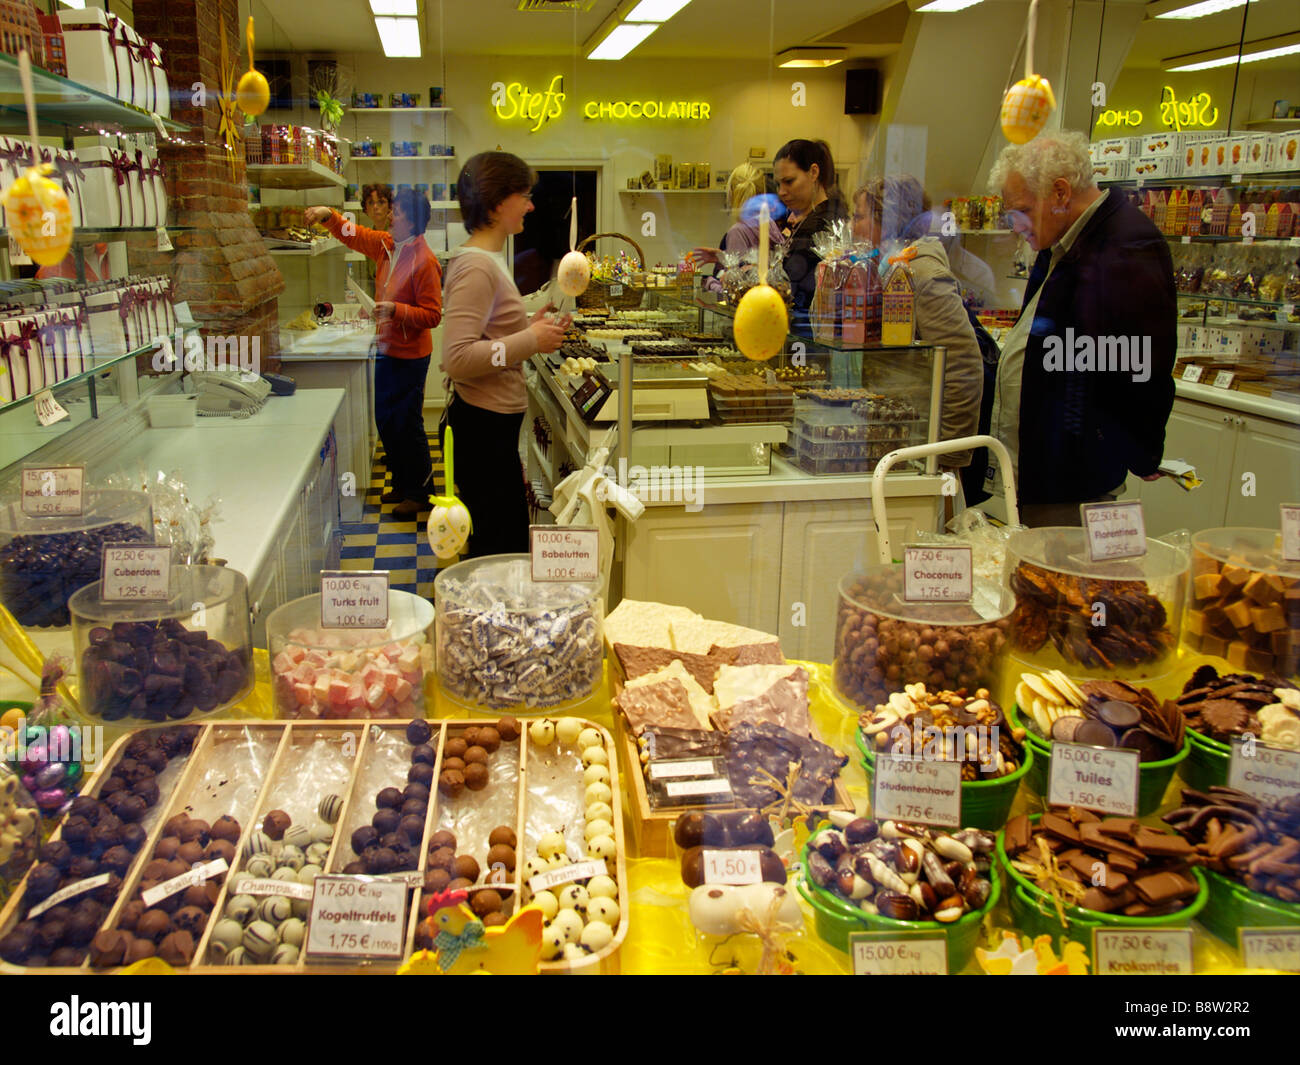 Bonbons de chocolat belge et sont un souvenir populaire dans Brugge Bruges Belgique Stefs Chocolatier shop store Banque D'Images